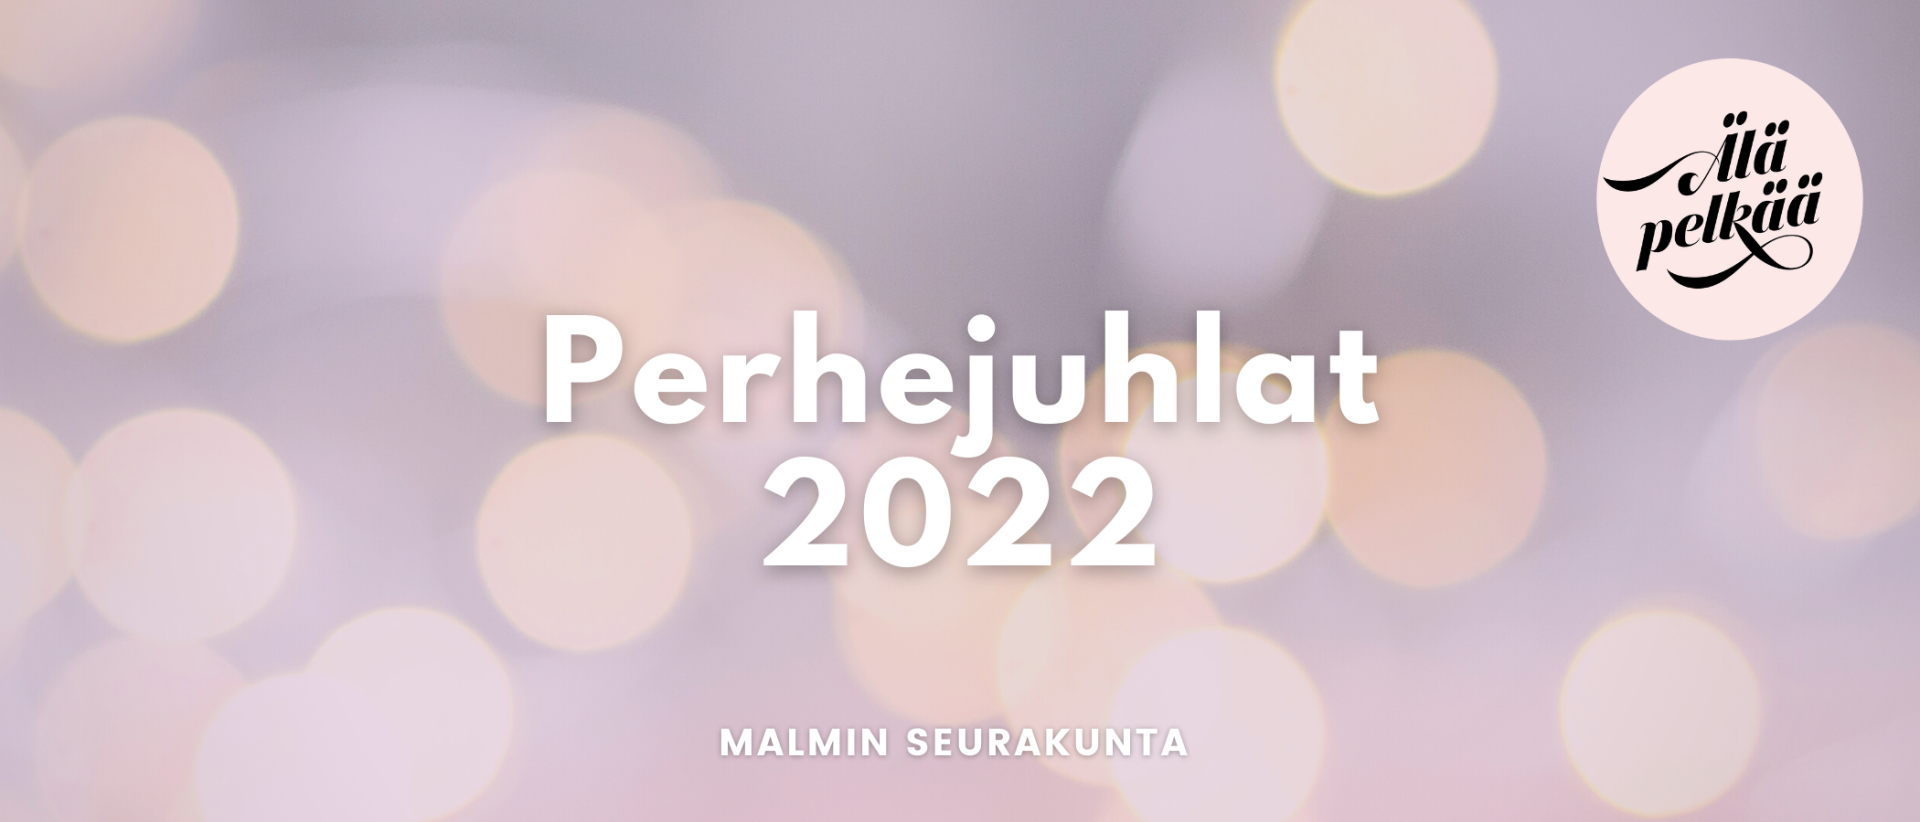 Vaaleaa säihkettä, teksti: Perhejuhlat 2022 Malmin seurakunta. Älä pelkää.